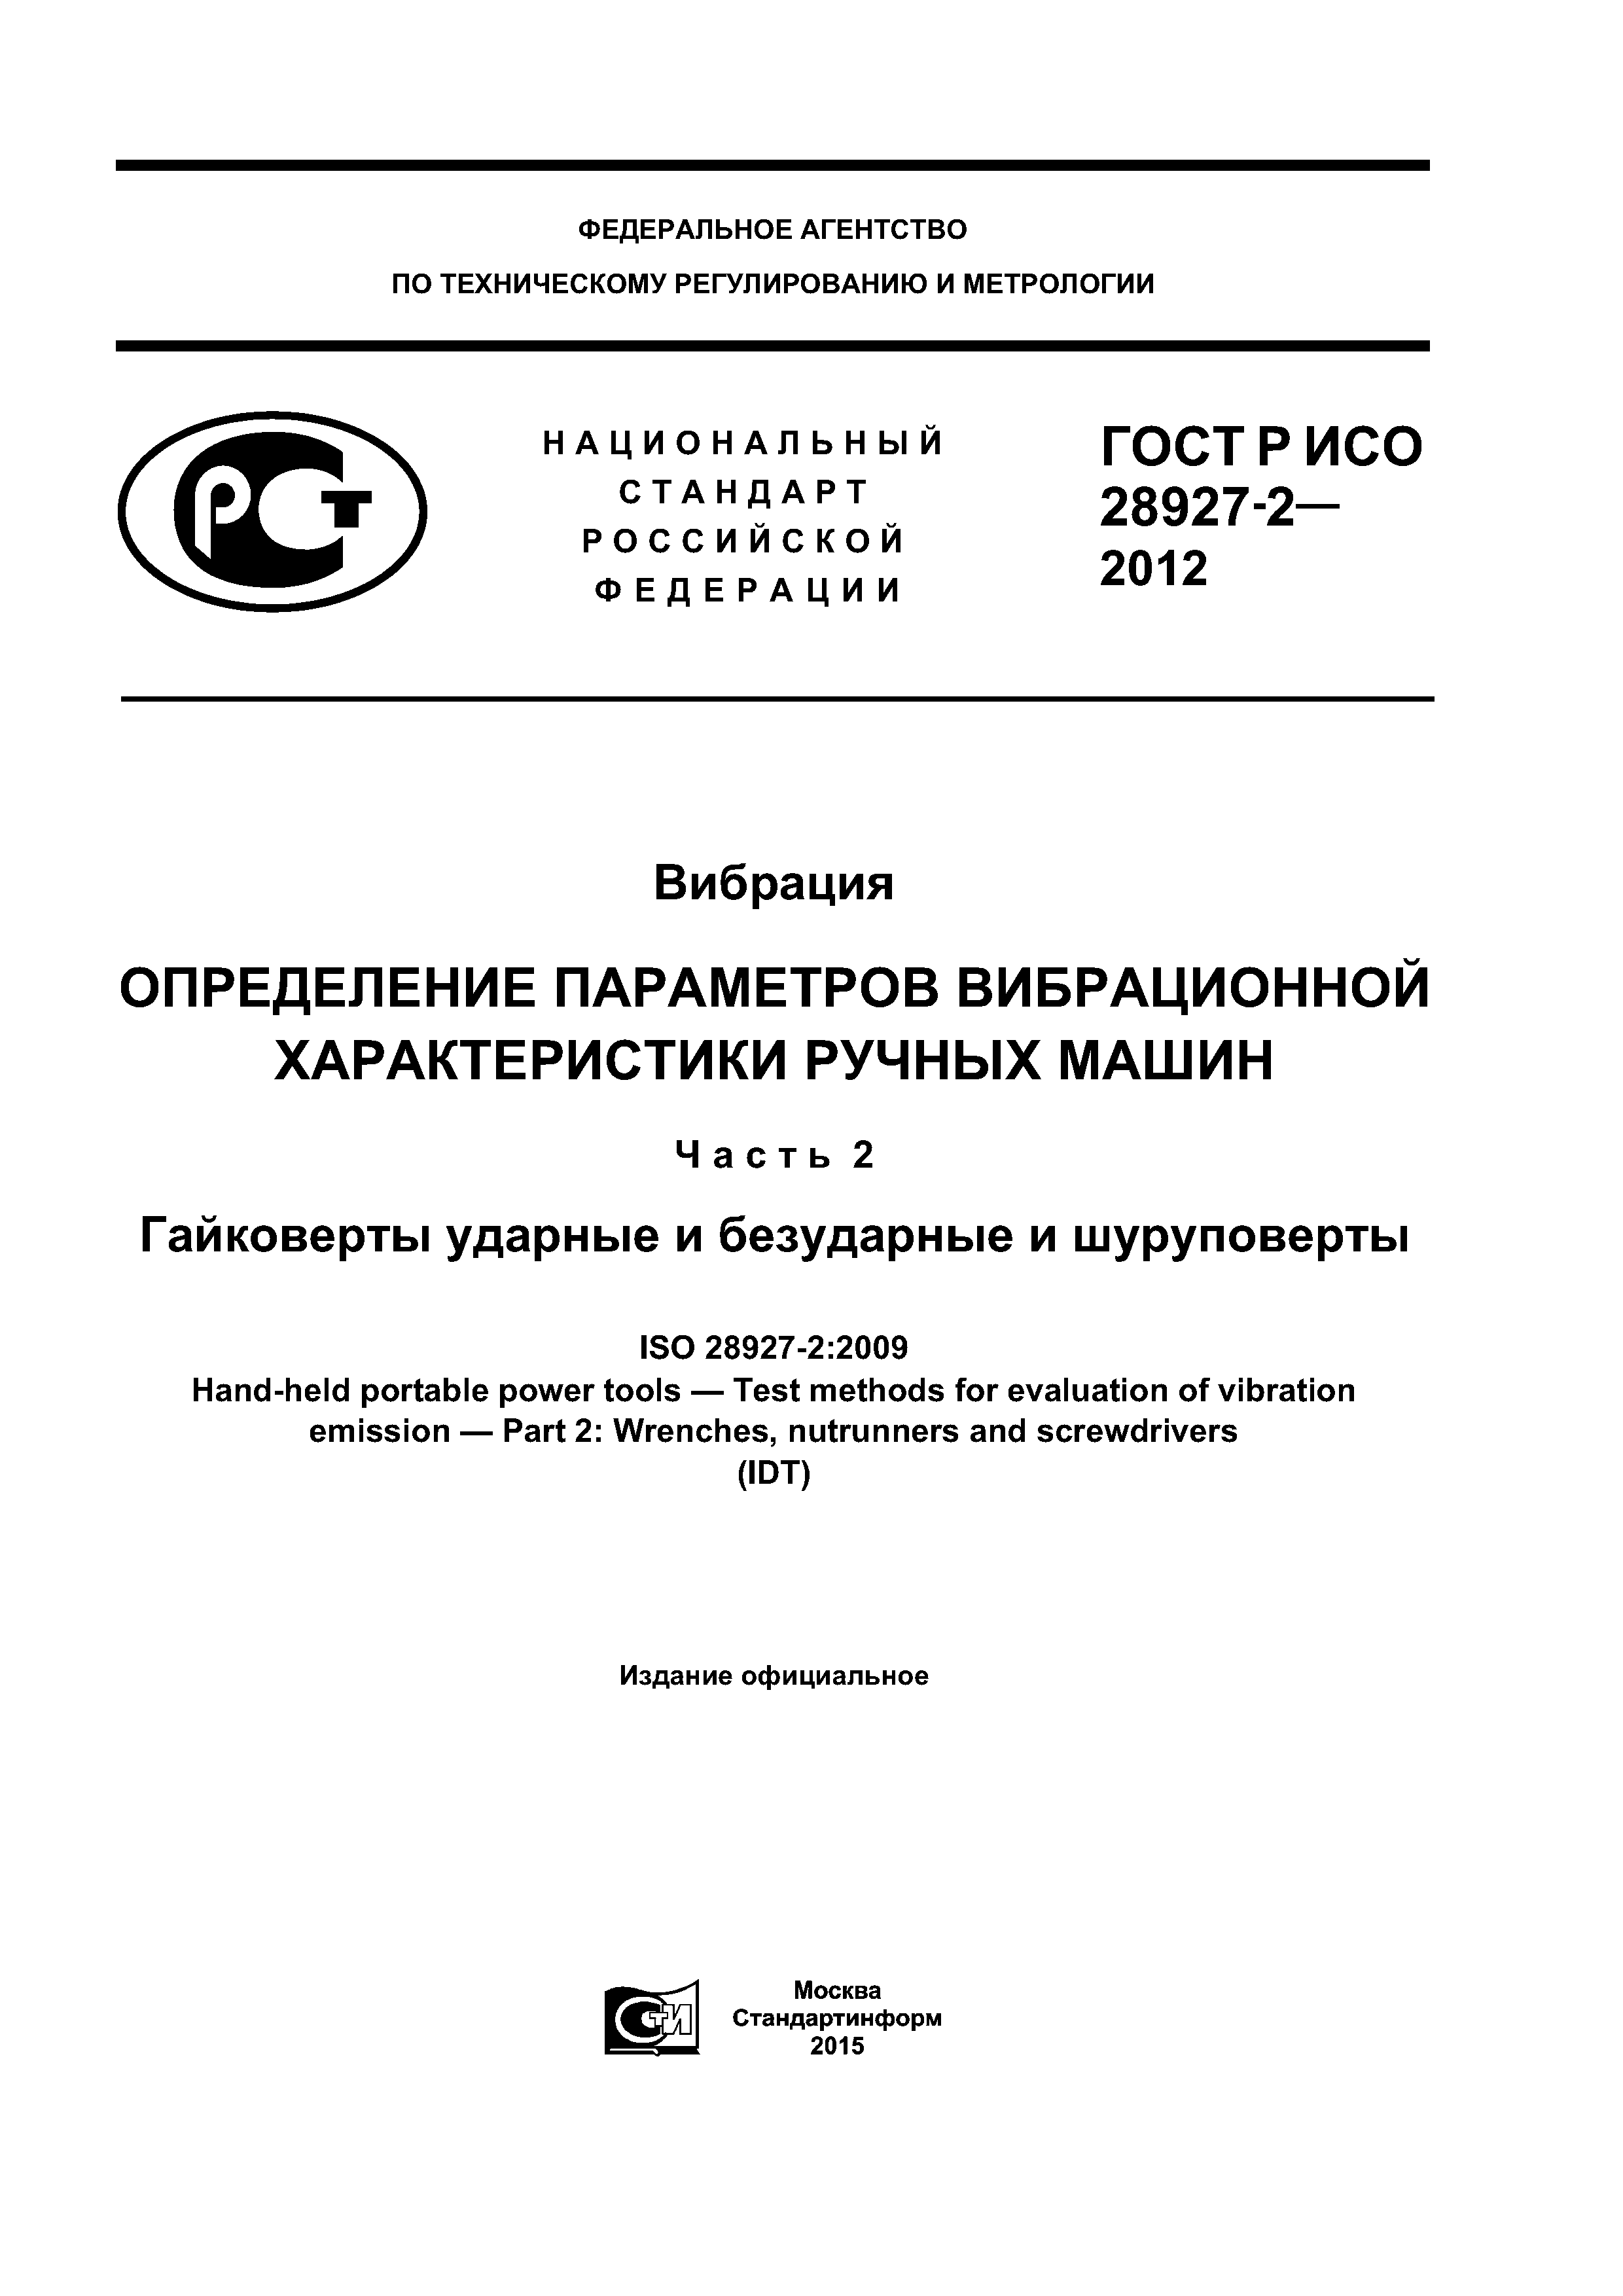 ГОСТ Р ИСО 28927-2-2012